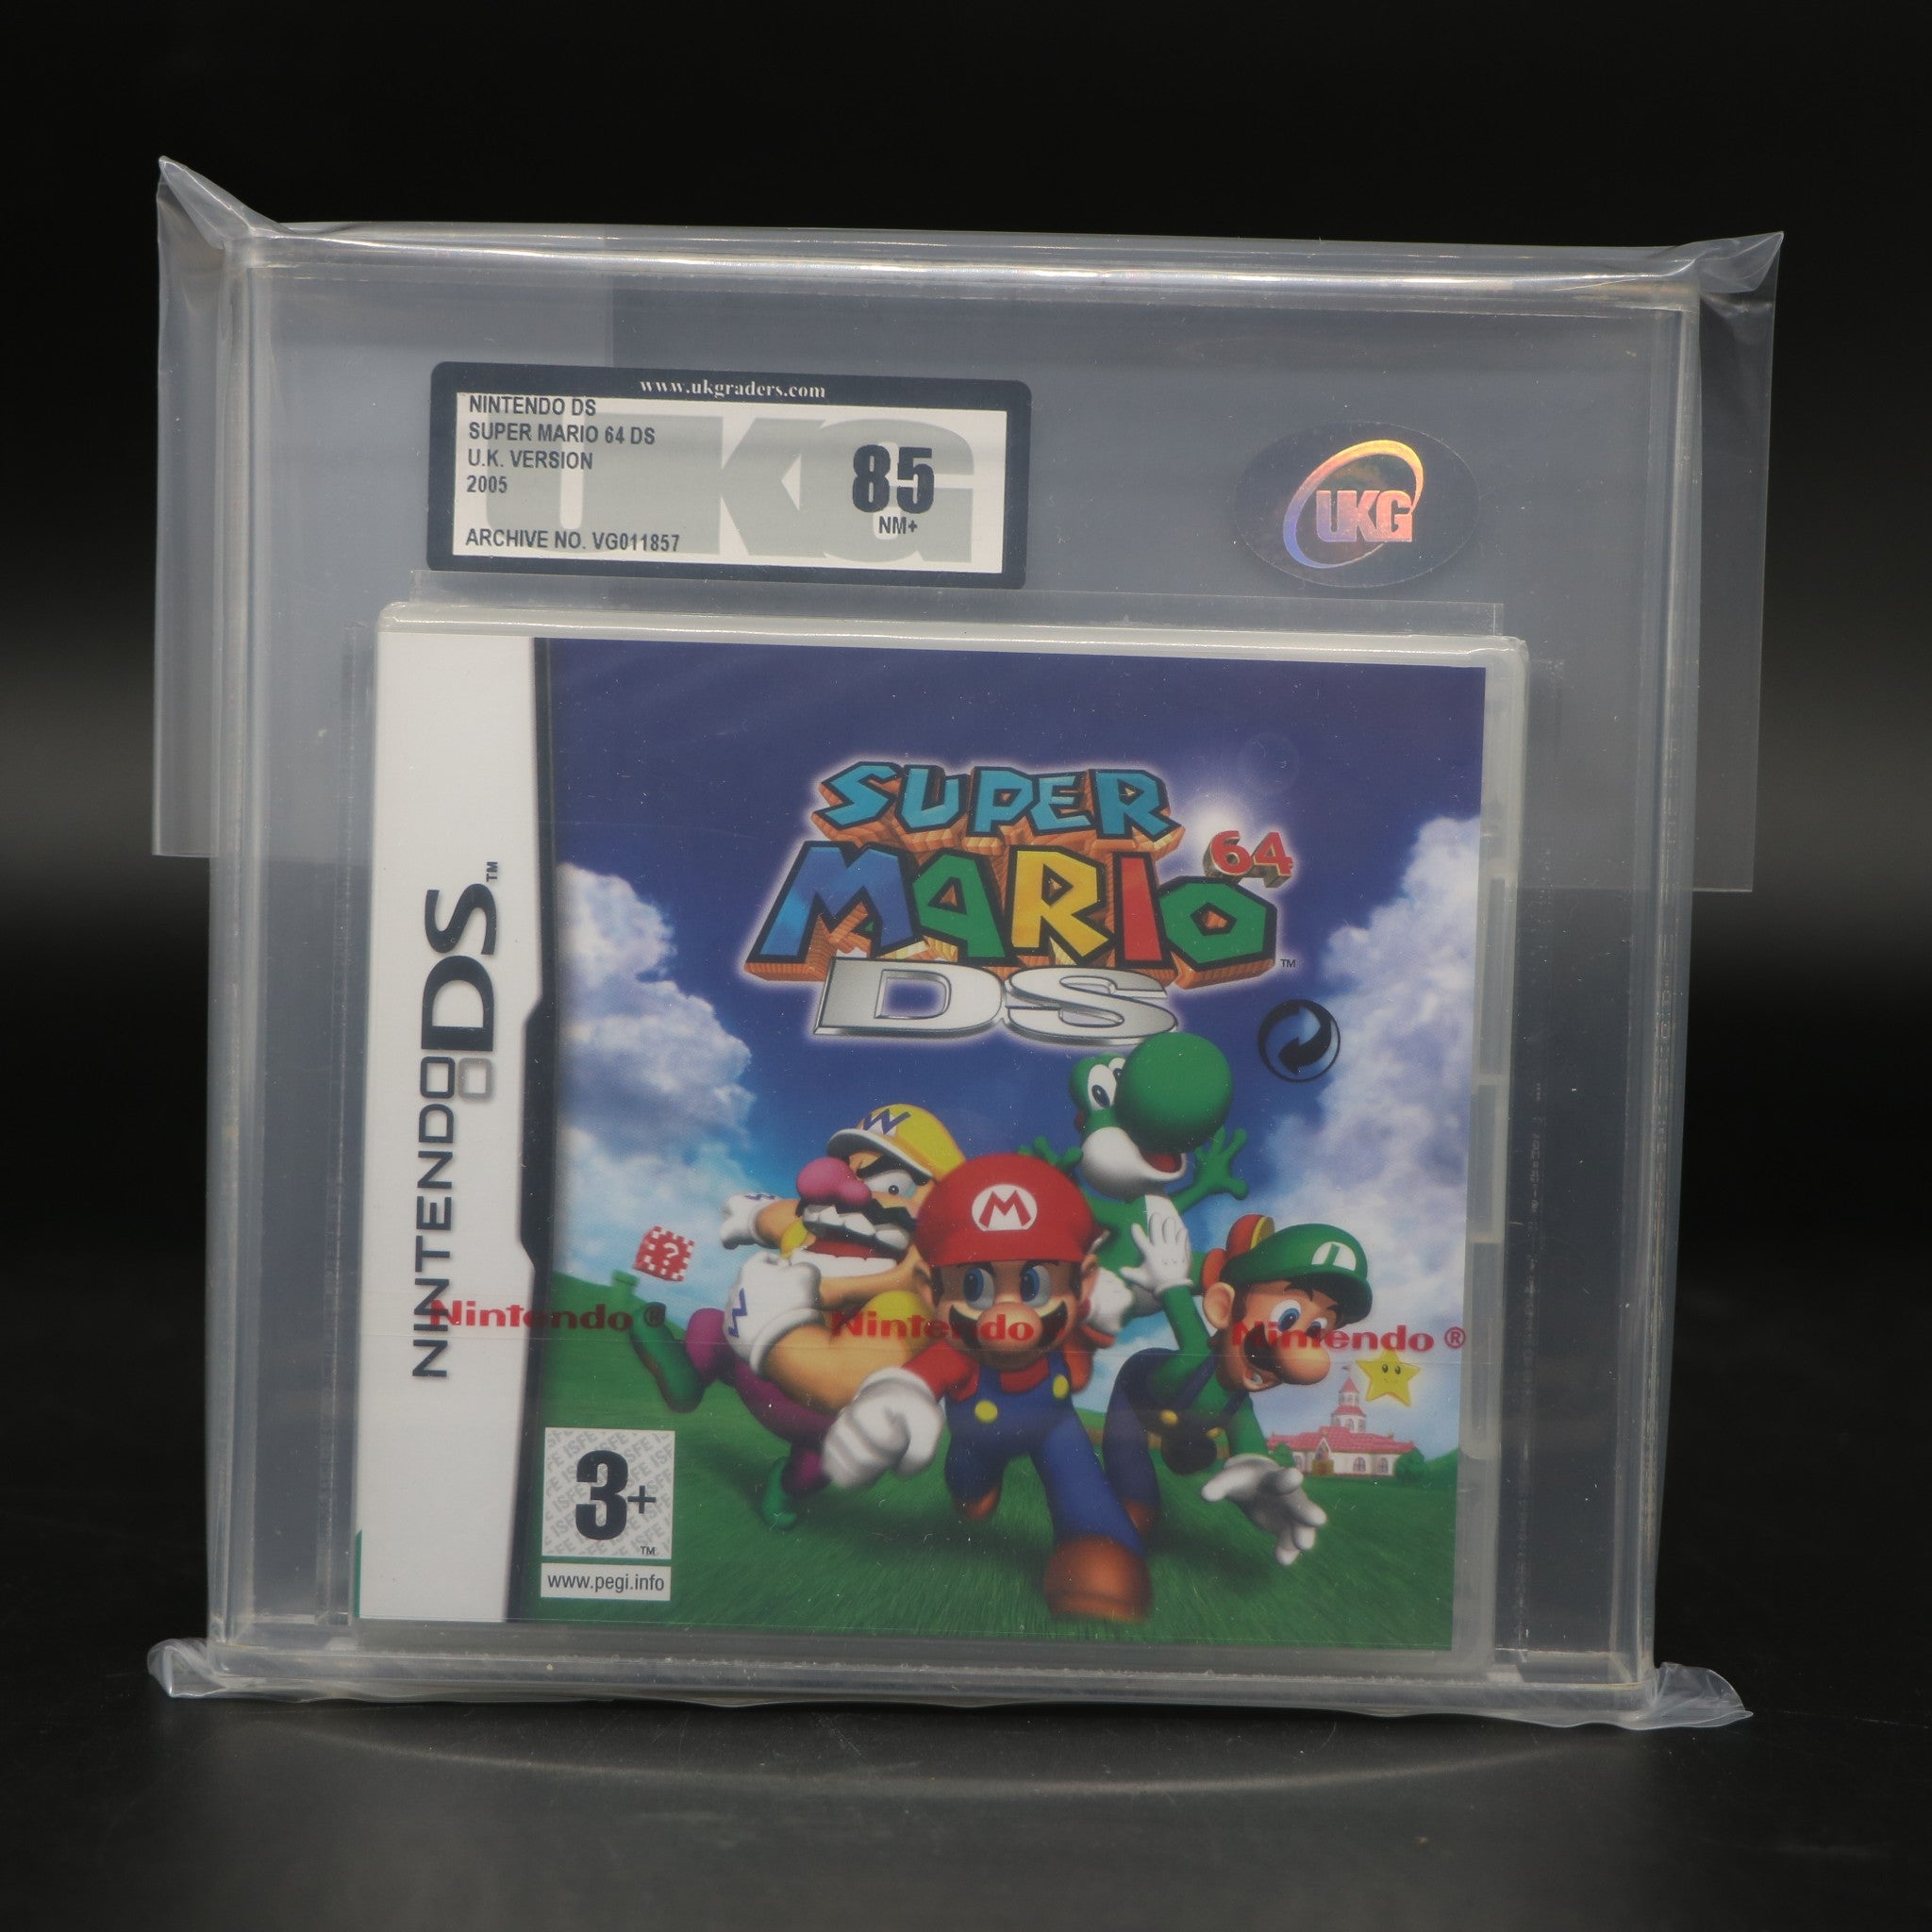 Super Mario 64 DS | Nintendo DS Game | UKG Graded 85+ NM